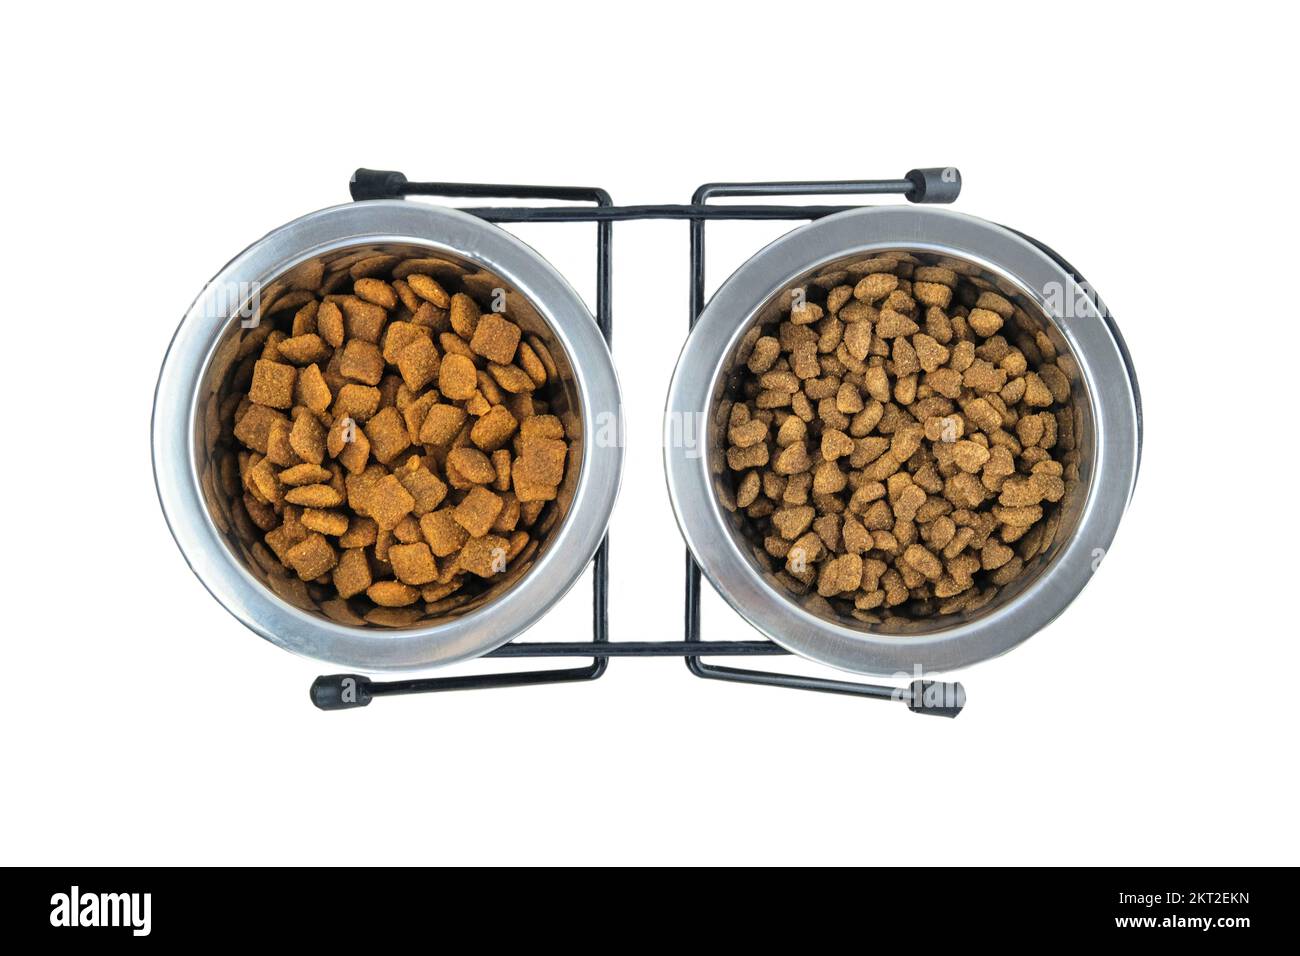 Nourriture sèche pour chats et chiens dans des bols métalliques isolés sur fond blanc. Vue de dessus. Banque D'Images